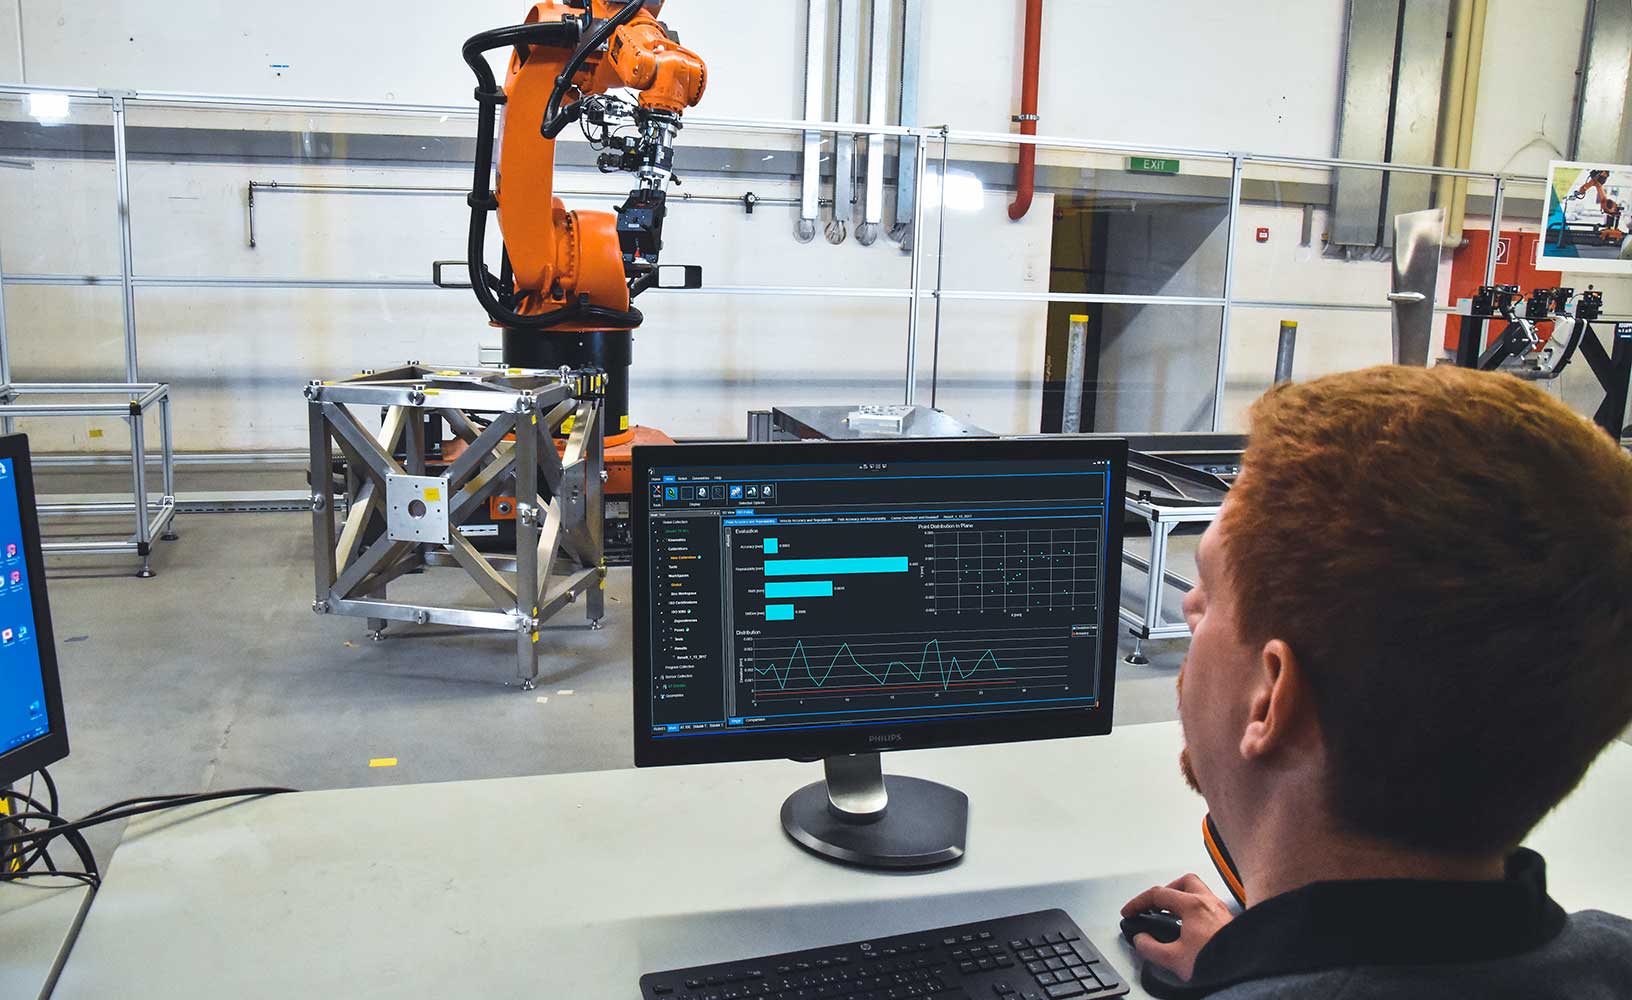 Robot industriale in fase di calibrazione da parte dell'operatore tramite software.